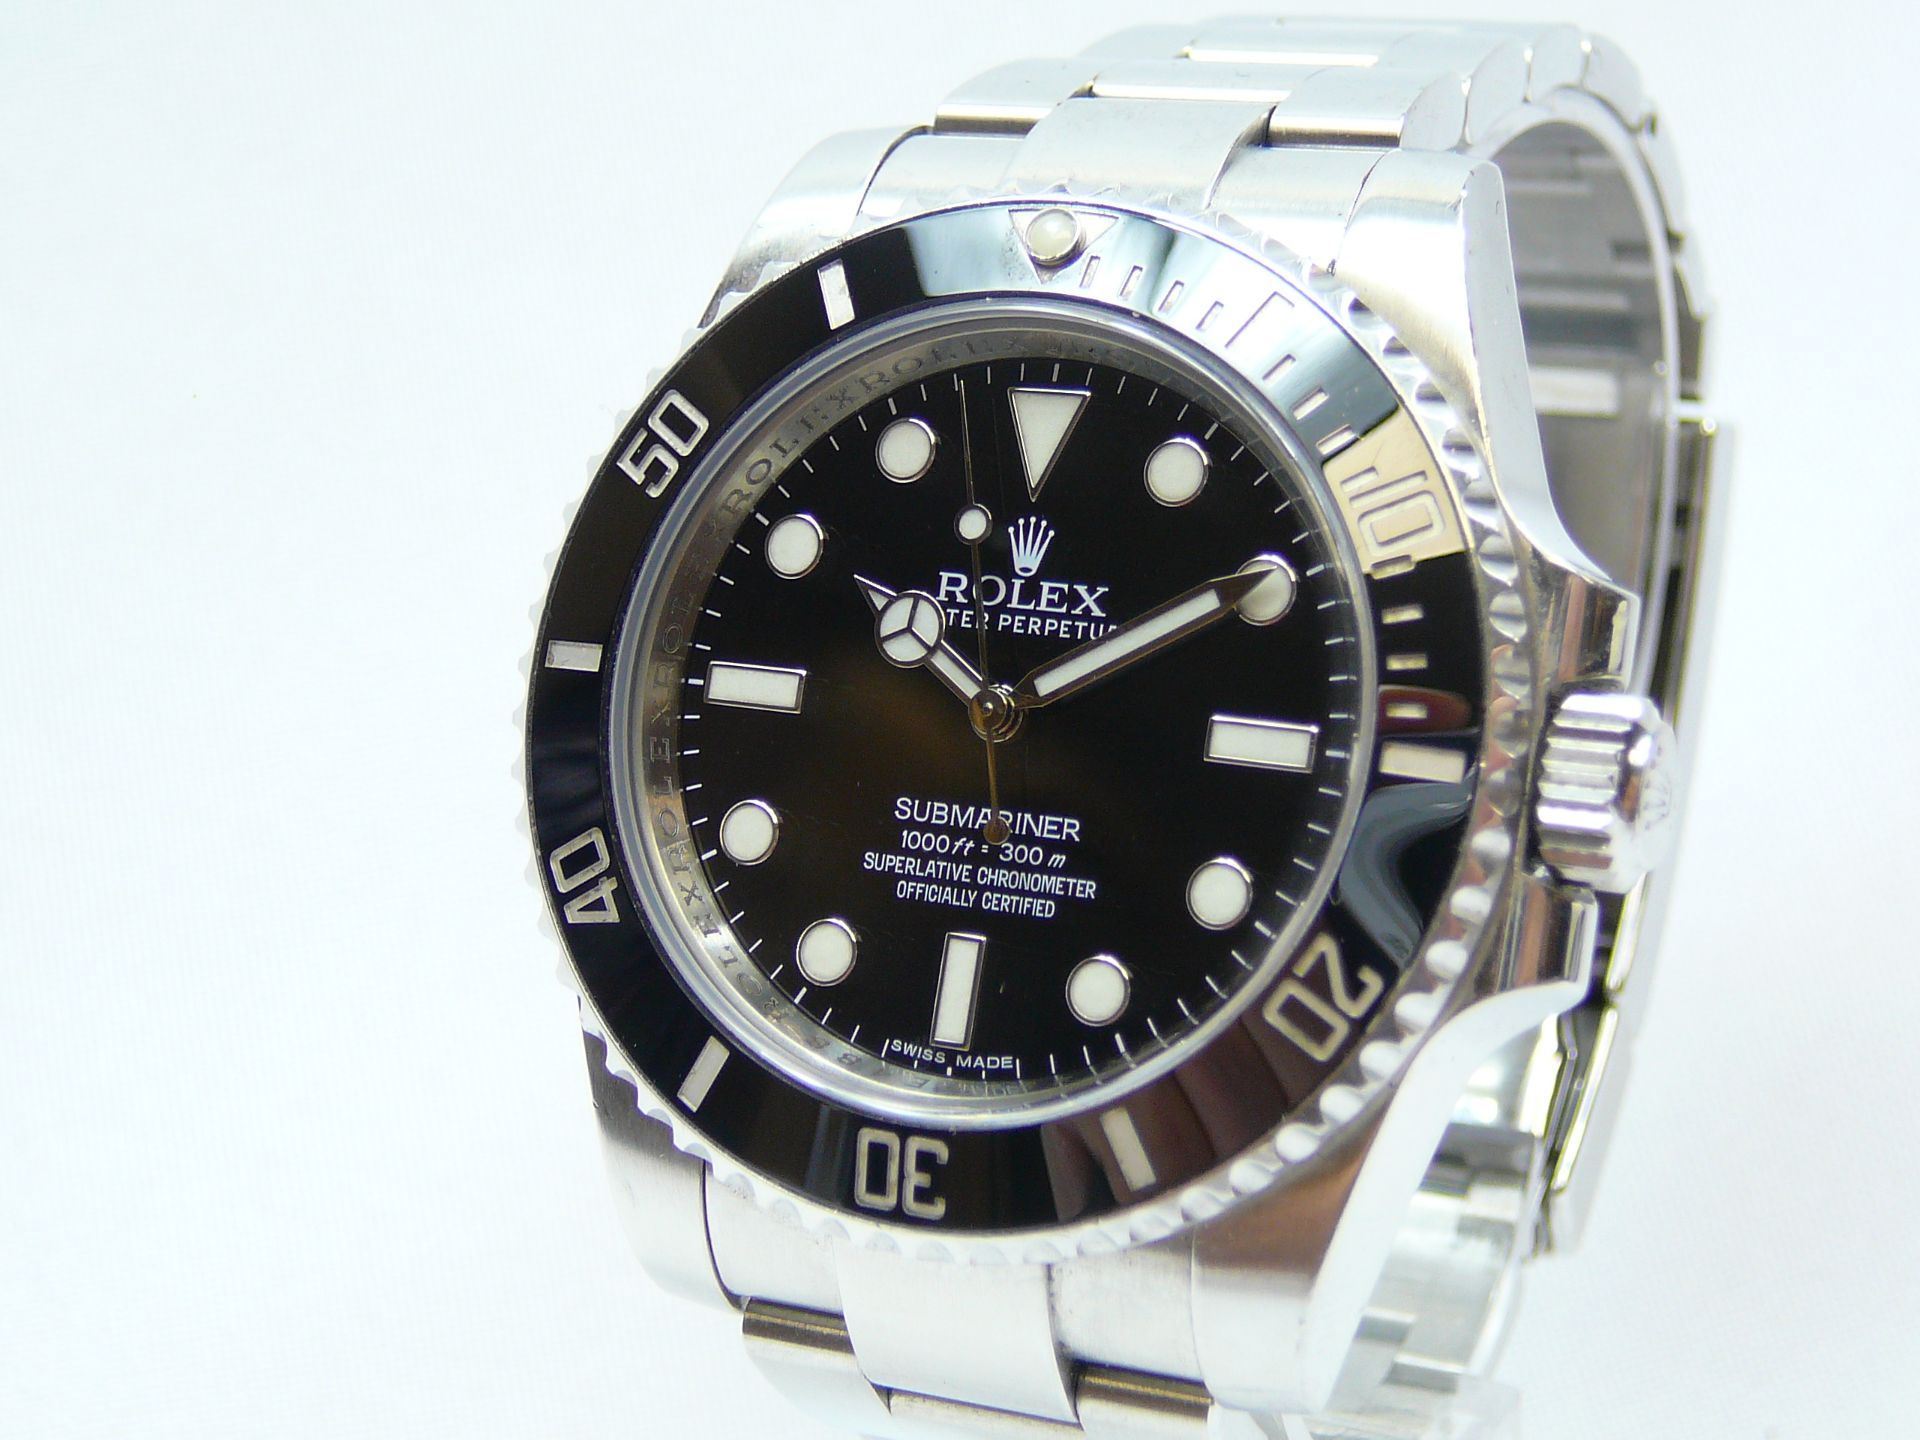 Gents Rolex Wrist Watch - Image 2 of 6